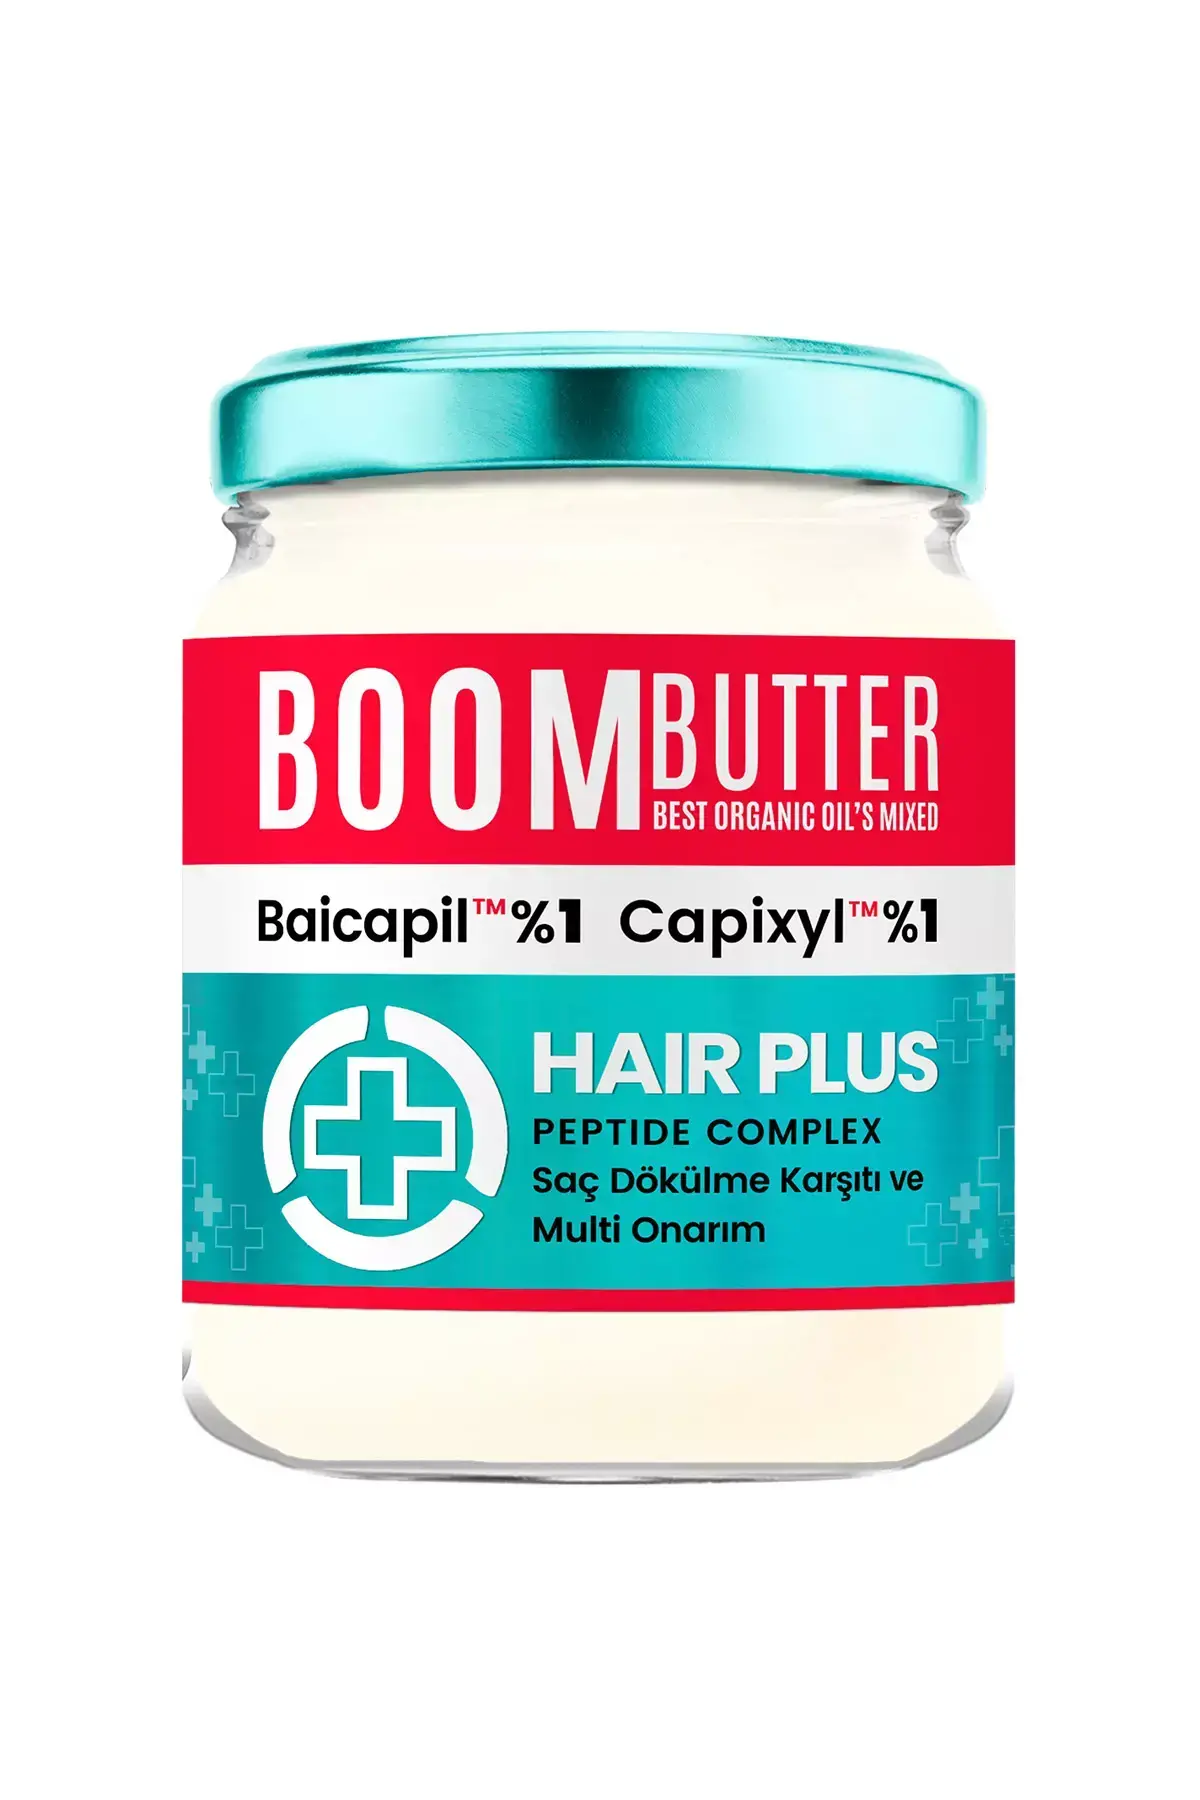 BOOM BUTTER Plus Dökülme Karşıtı %1 Baicapil + %1 Capixyl Besleyici Saç Bakım Yağı 190 ML - 7